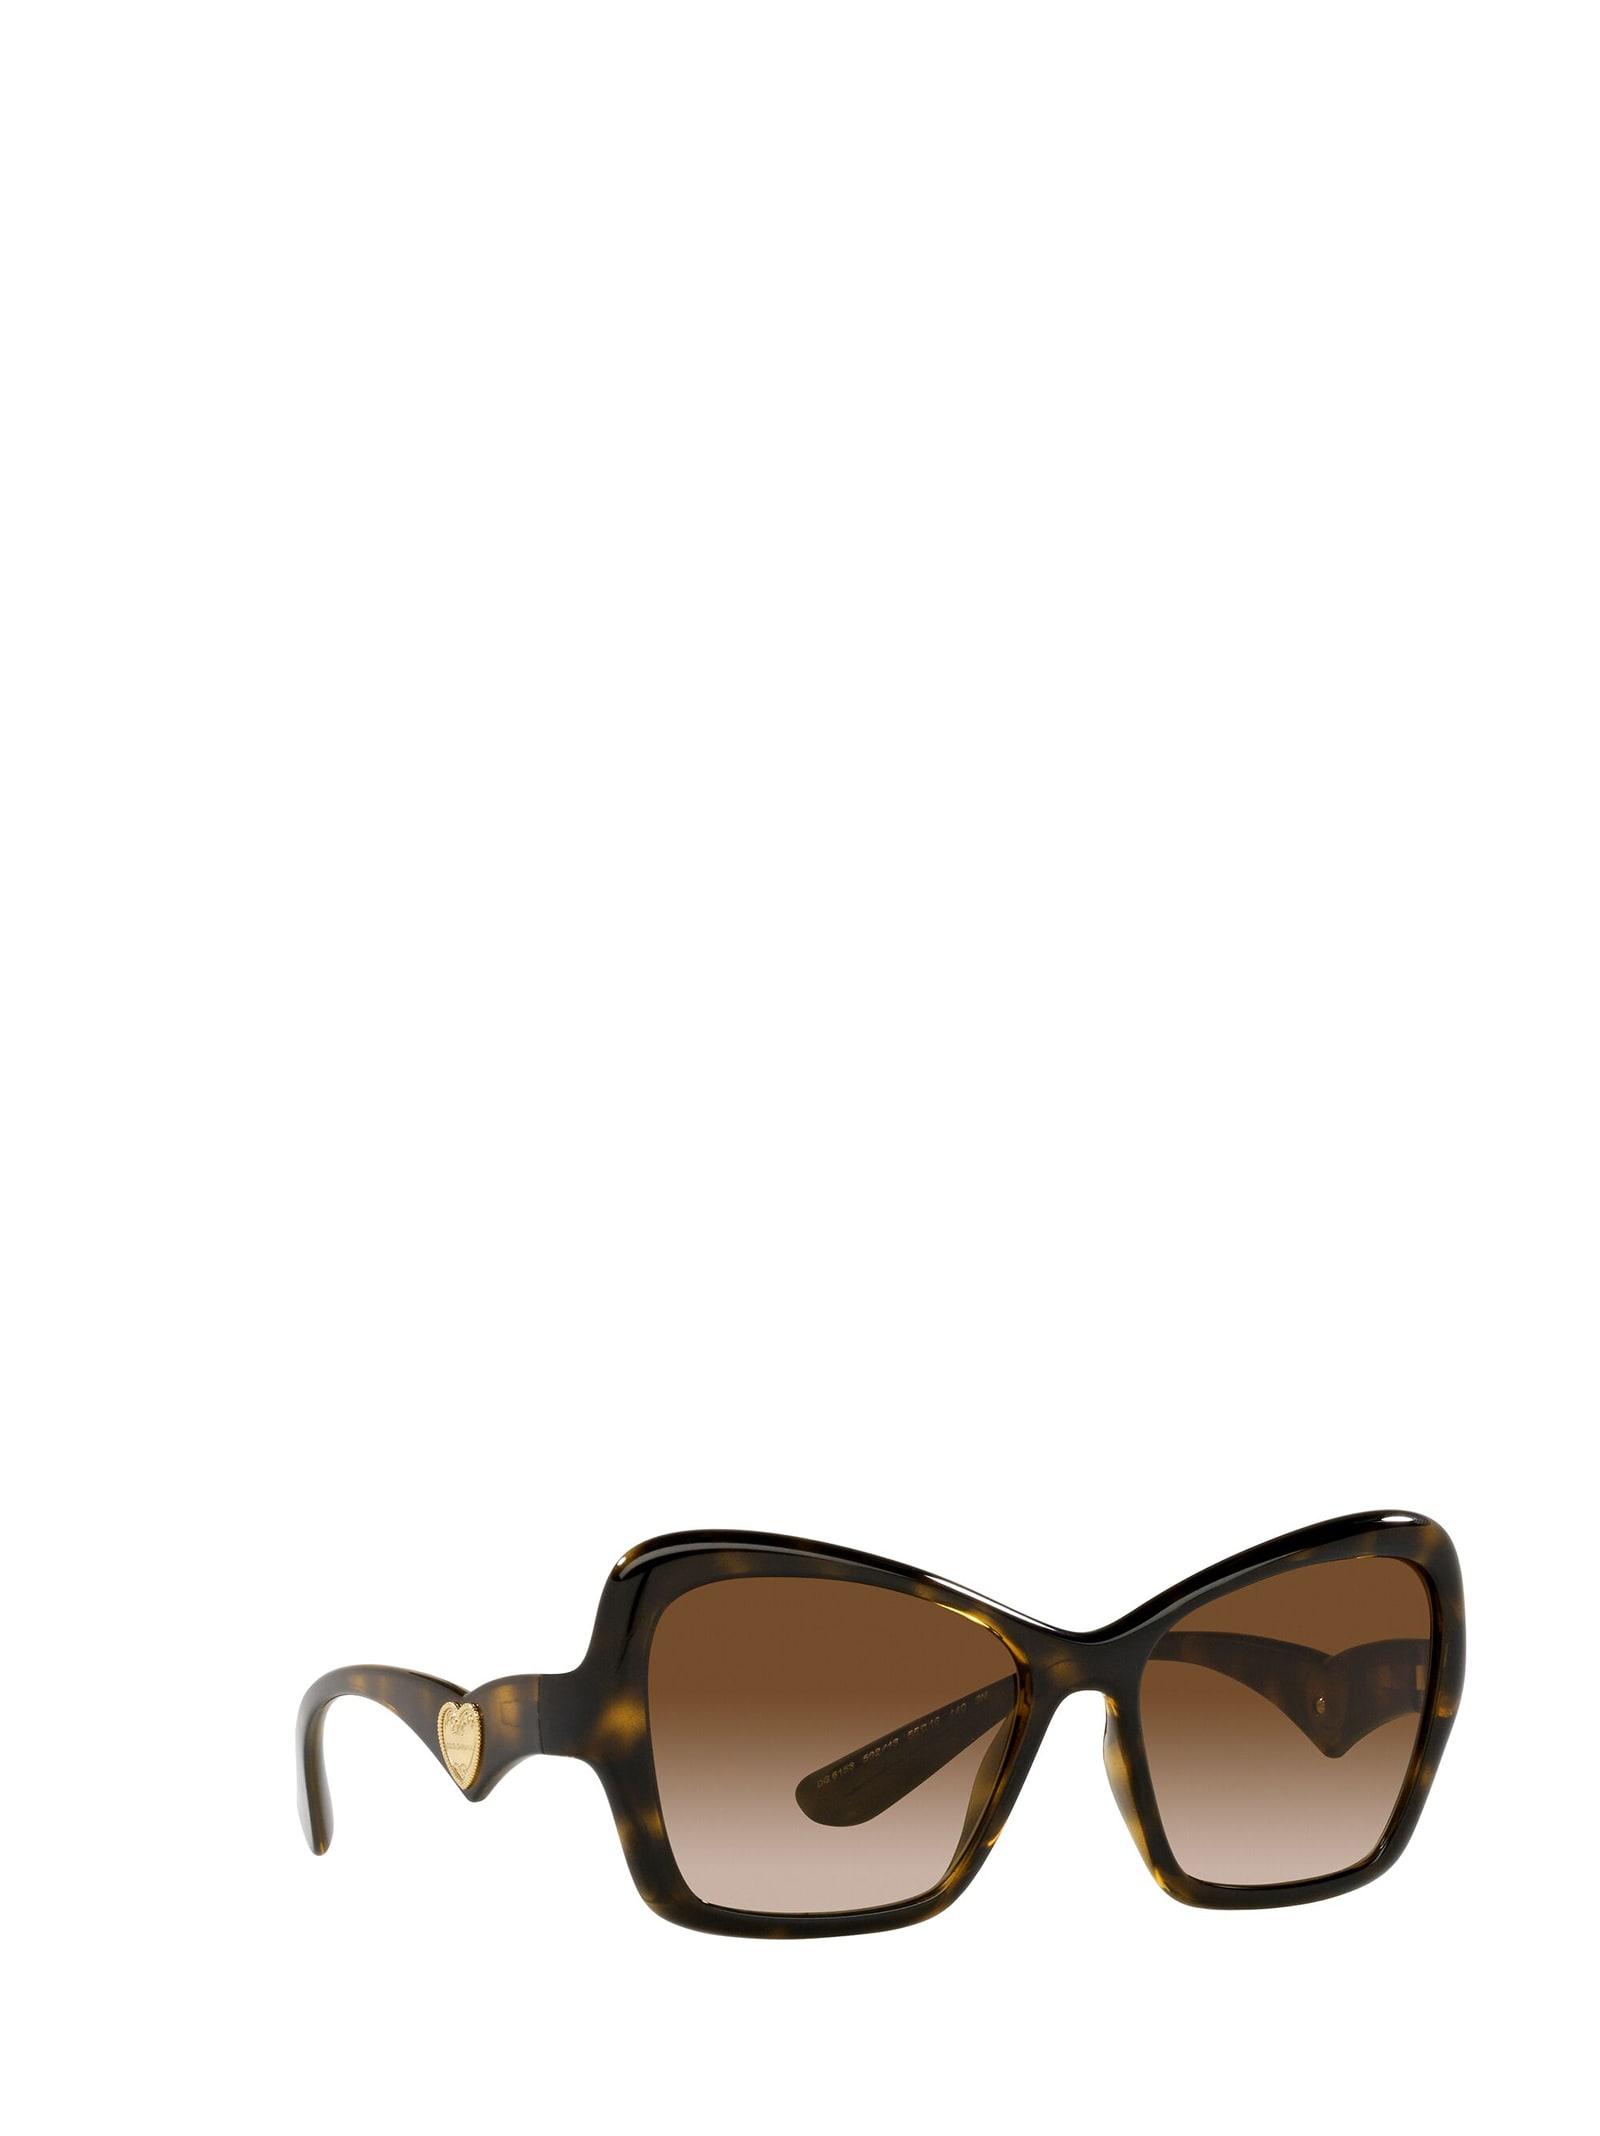 Dolce & Gabbana Lunettes de soleil/sunglasses dg3153p 2774 52/15 140/494 19 